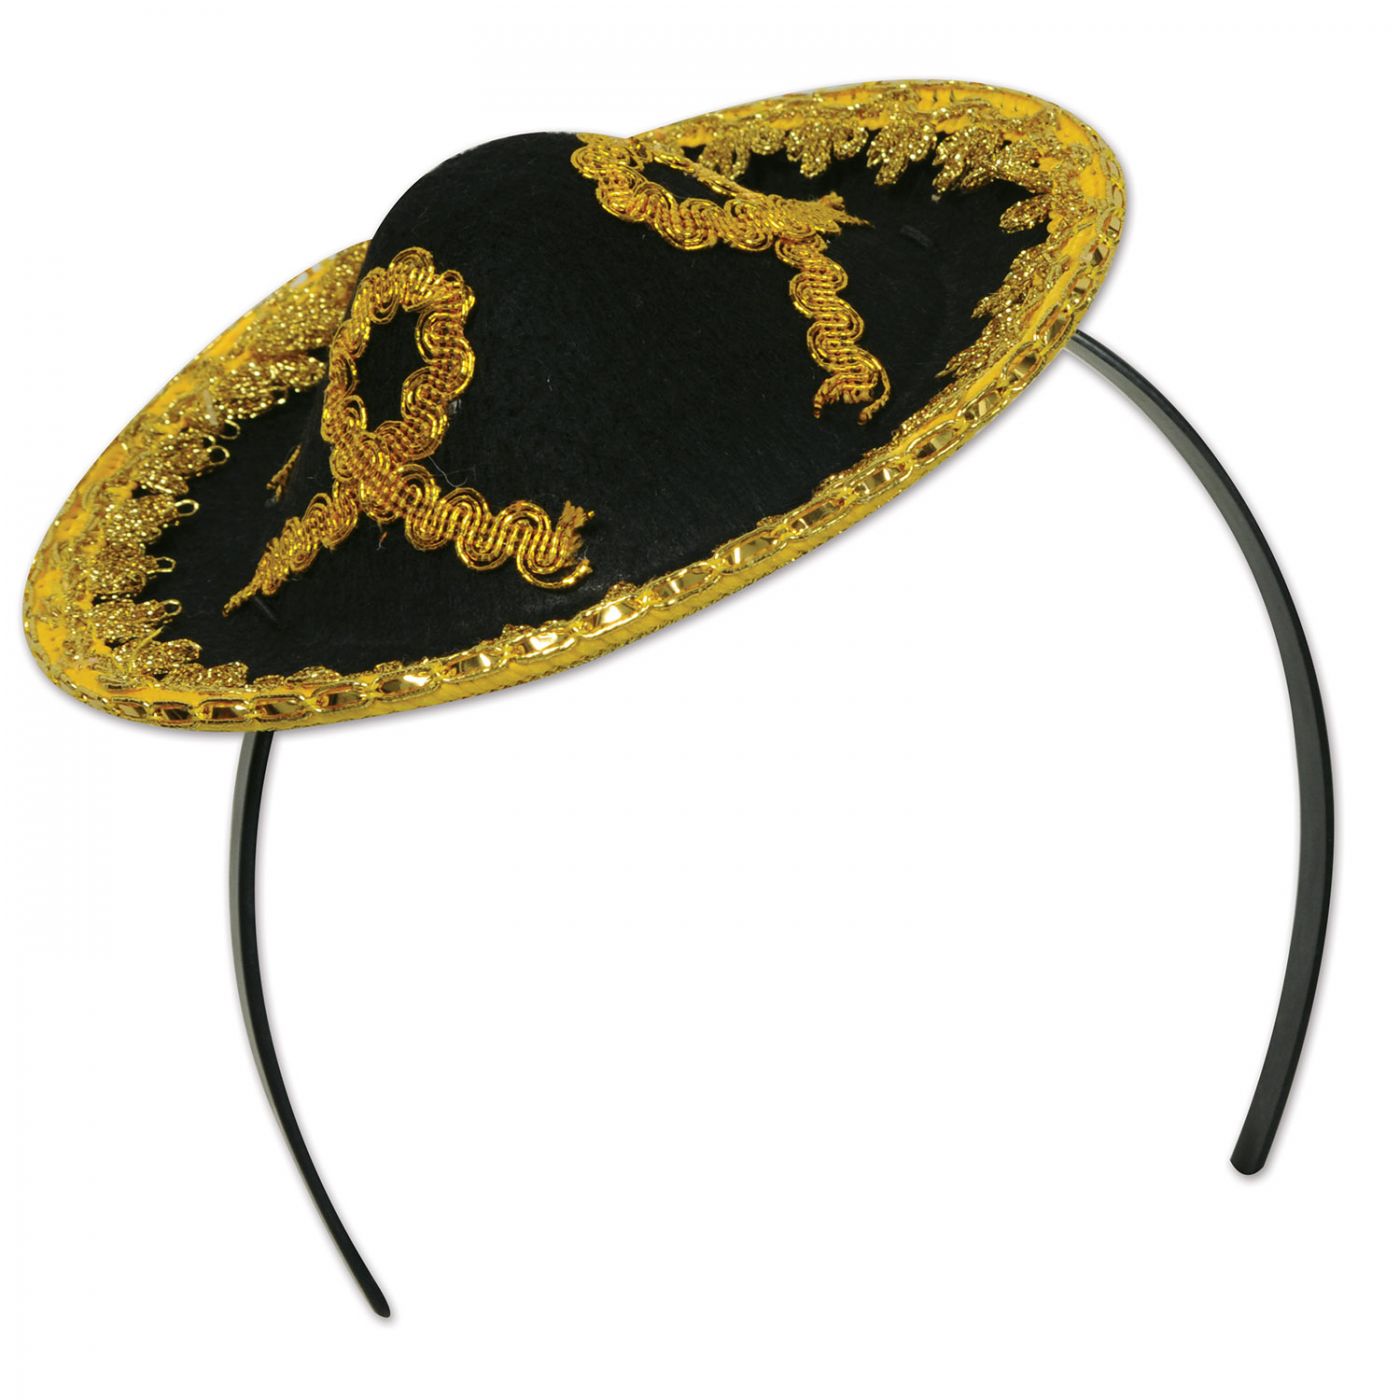 Sombrero Headband (12) image